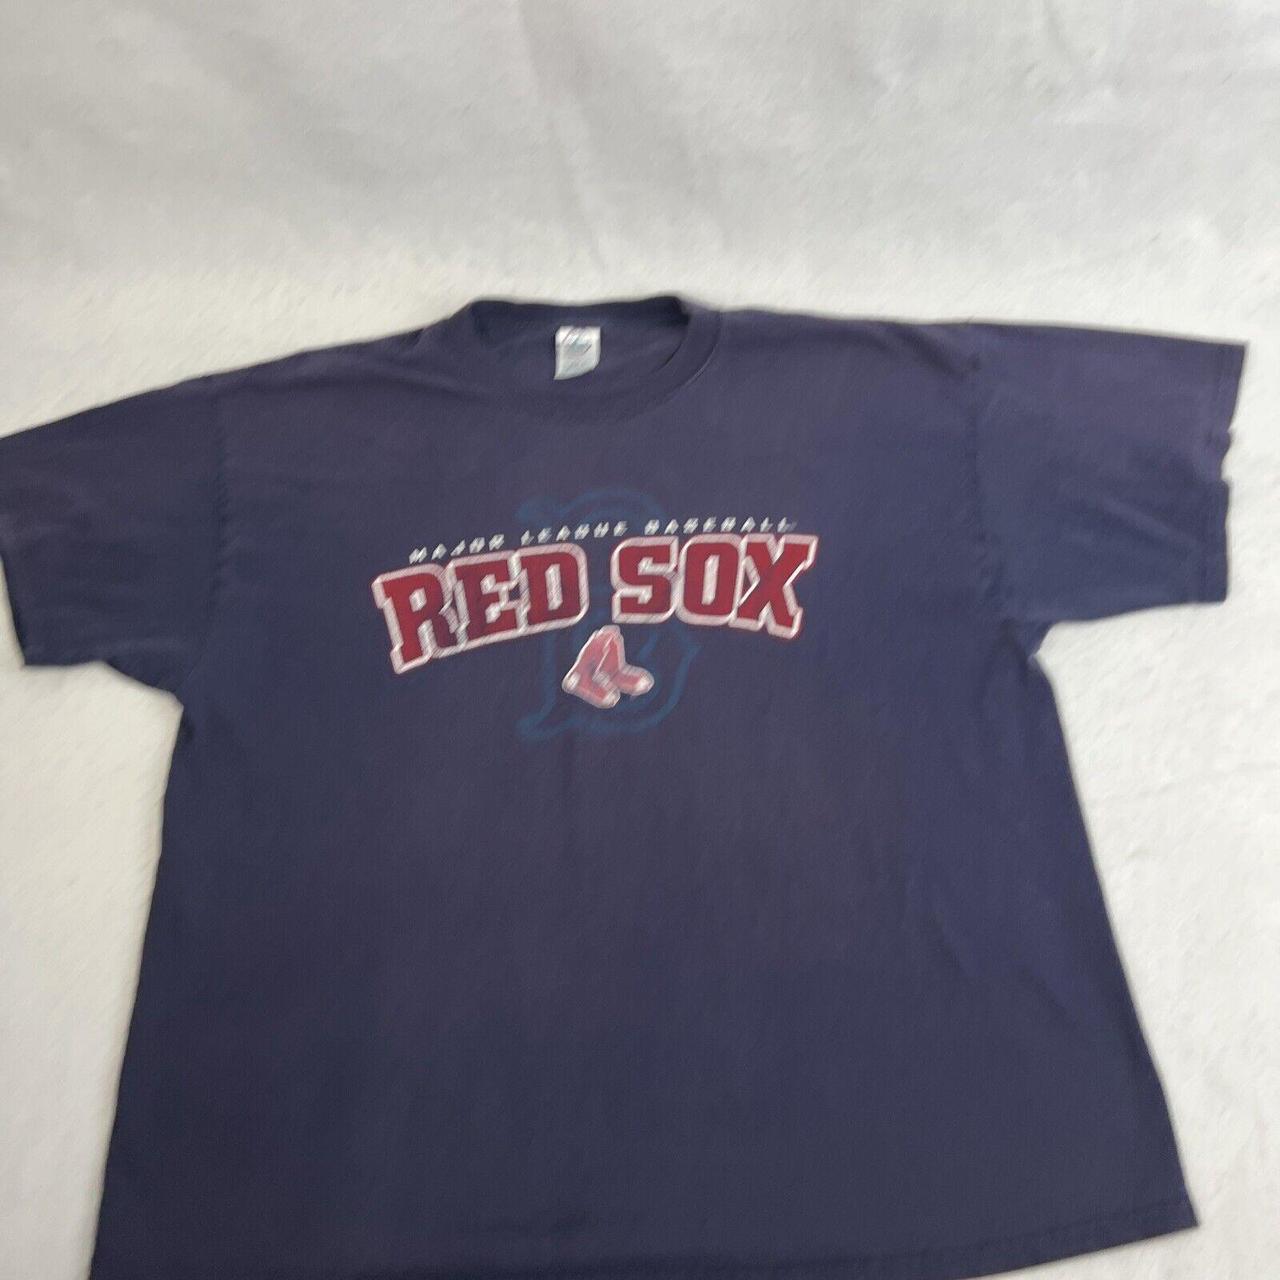 MLB Men's T-Shirt - Red - XL